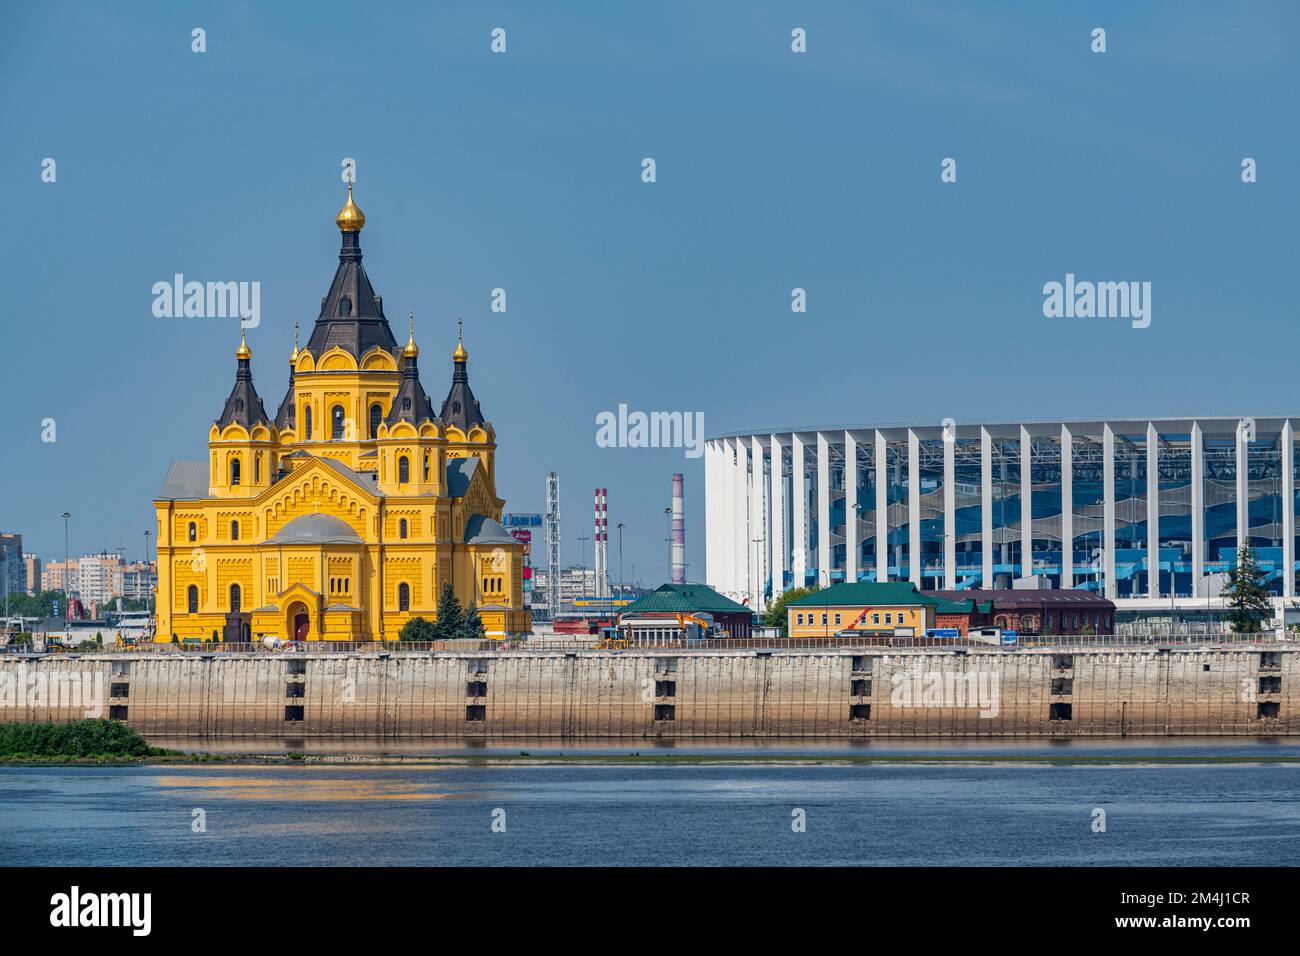 Alexander Nevsky Cathedral on the Volga, Nizhny Novgorod, Russia Stock Photo